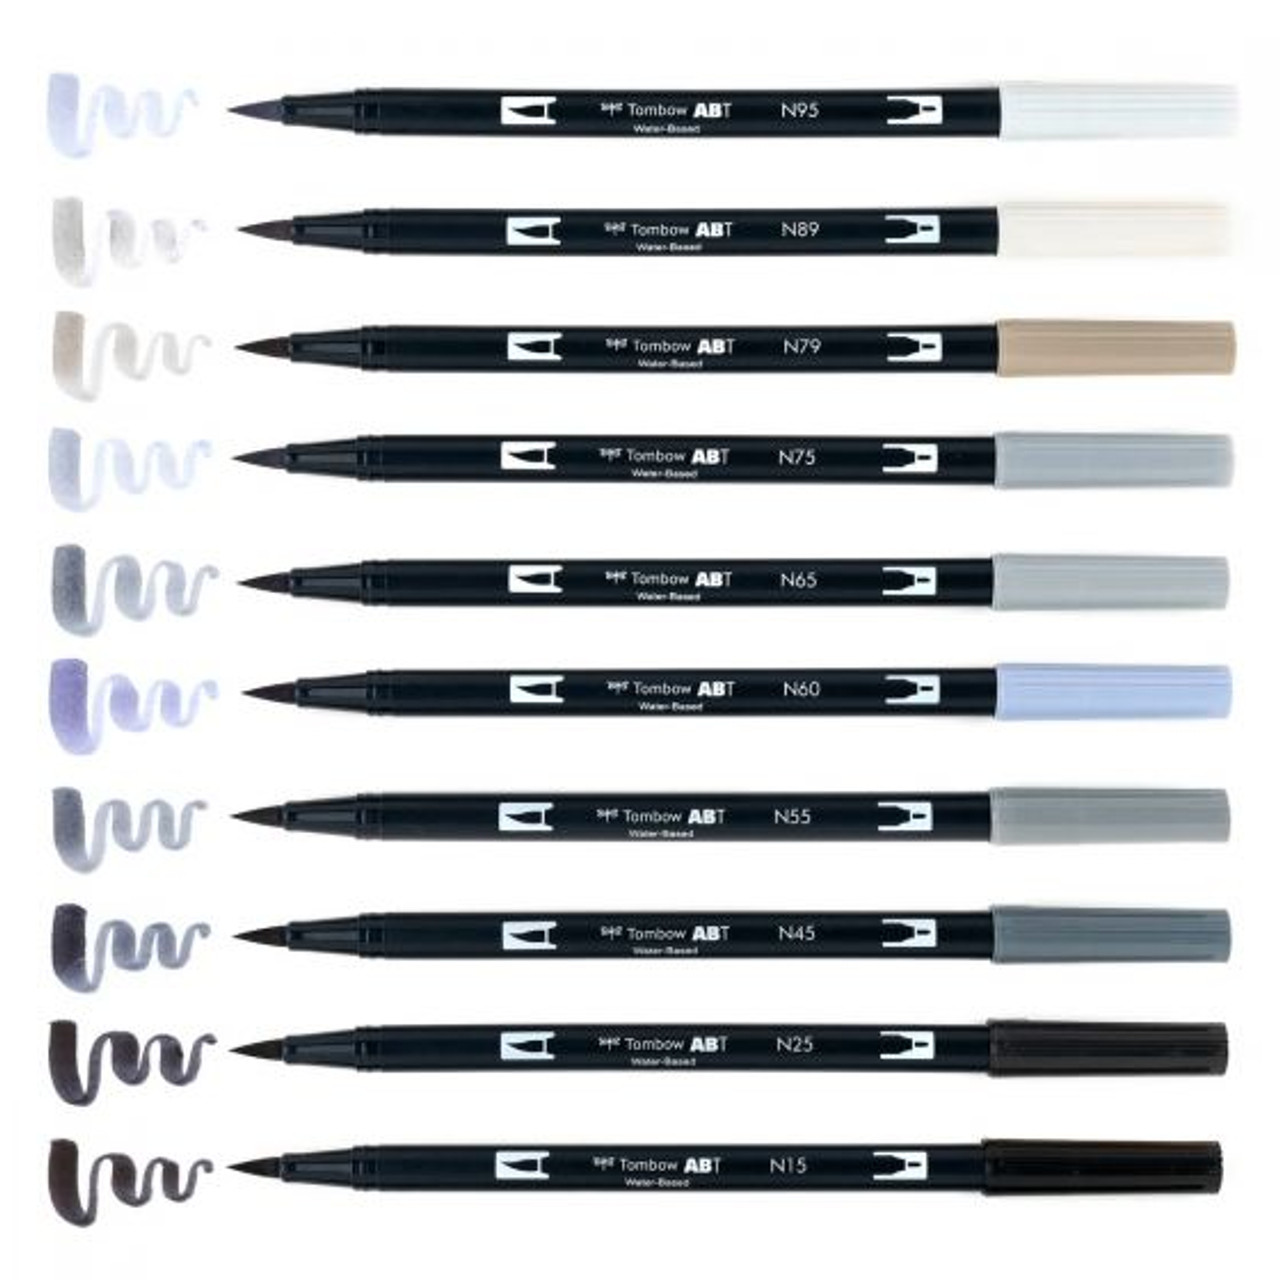 Tombow - Dual Brush-Pen - Light Ochre #991